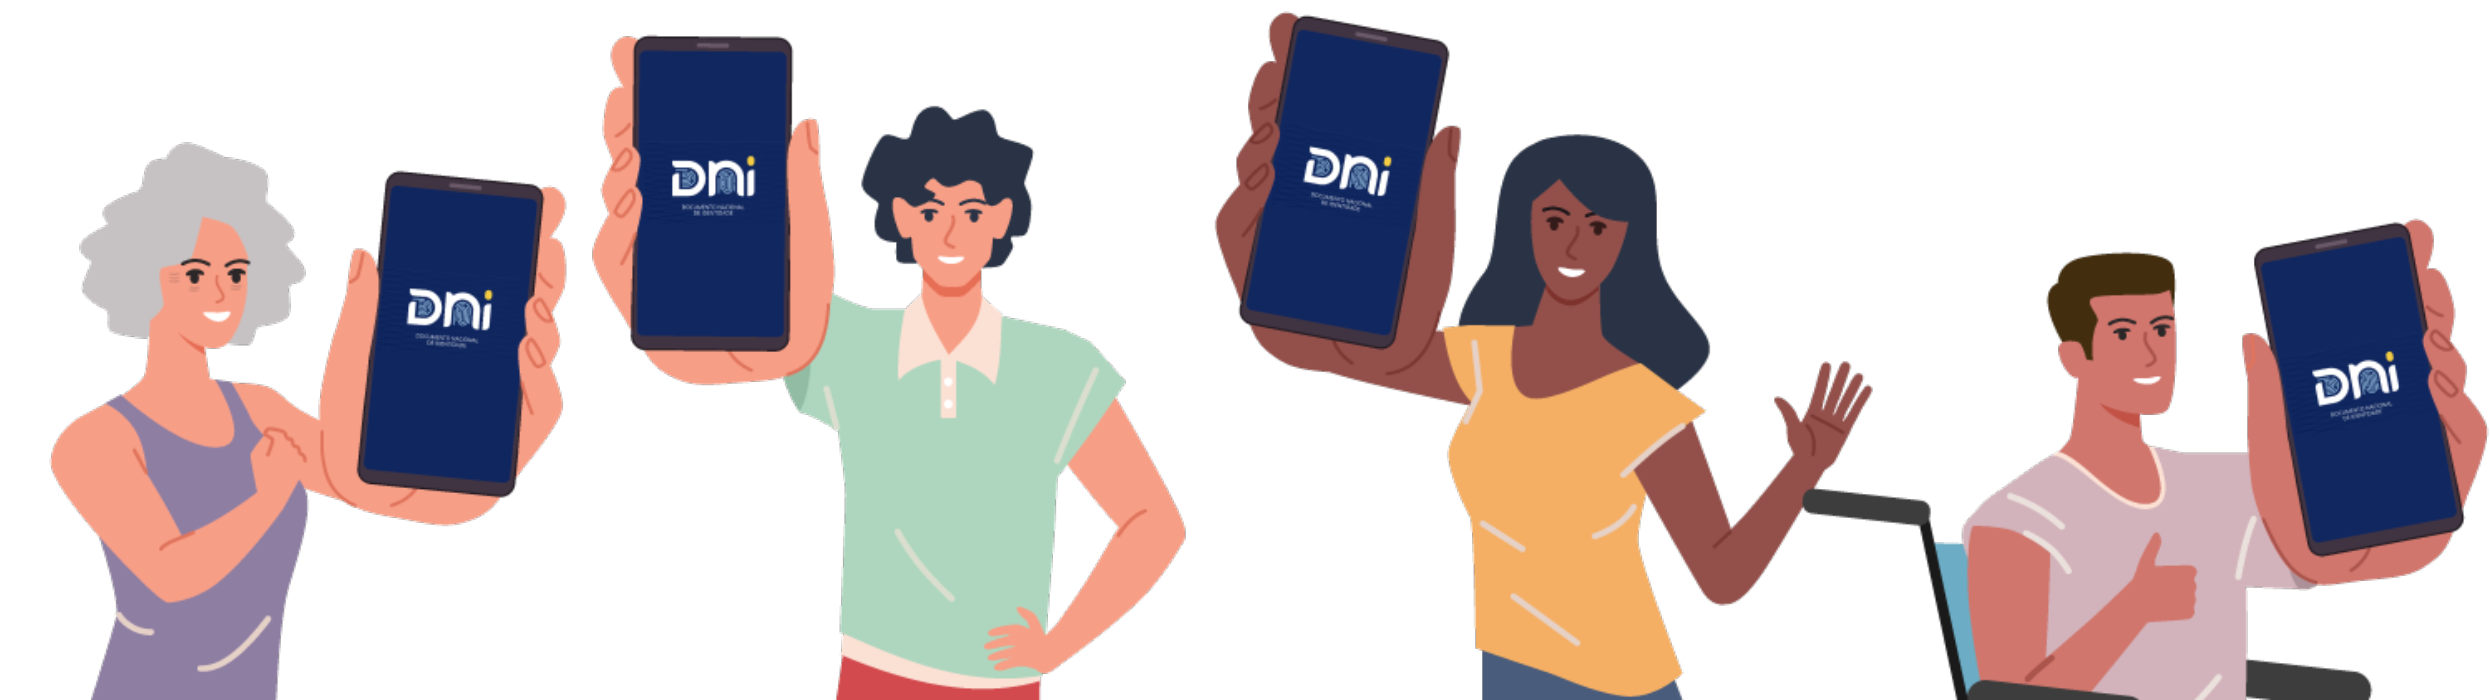 Ilustração de um grupo com quatro pessoas mostrando o celular com a tela aparecendo 'DNI'